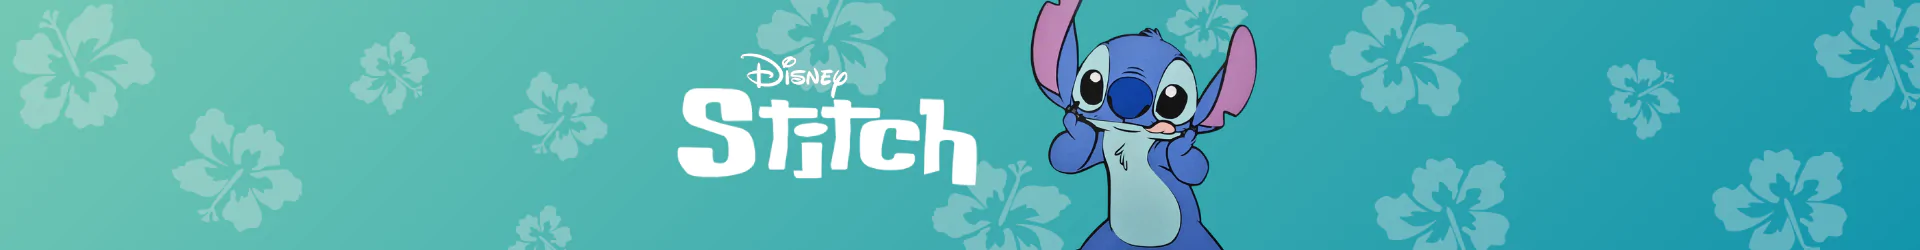 Stitch spiele banner